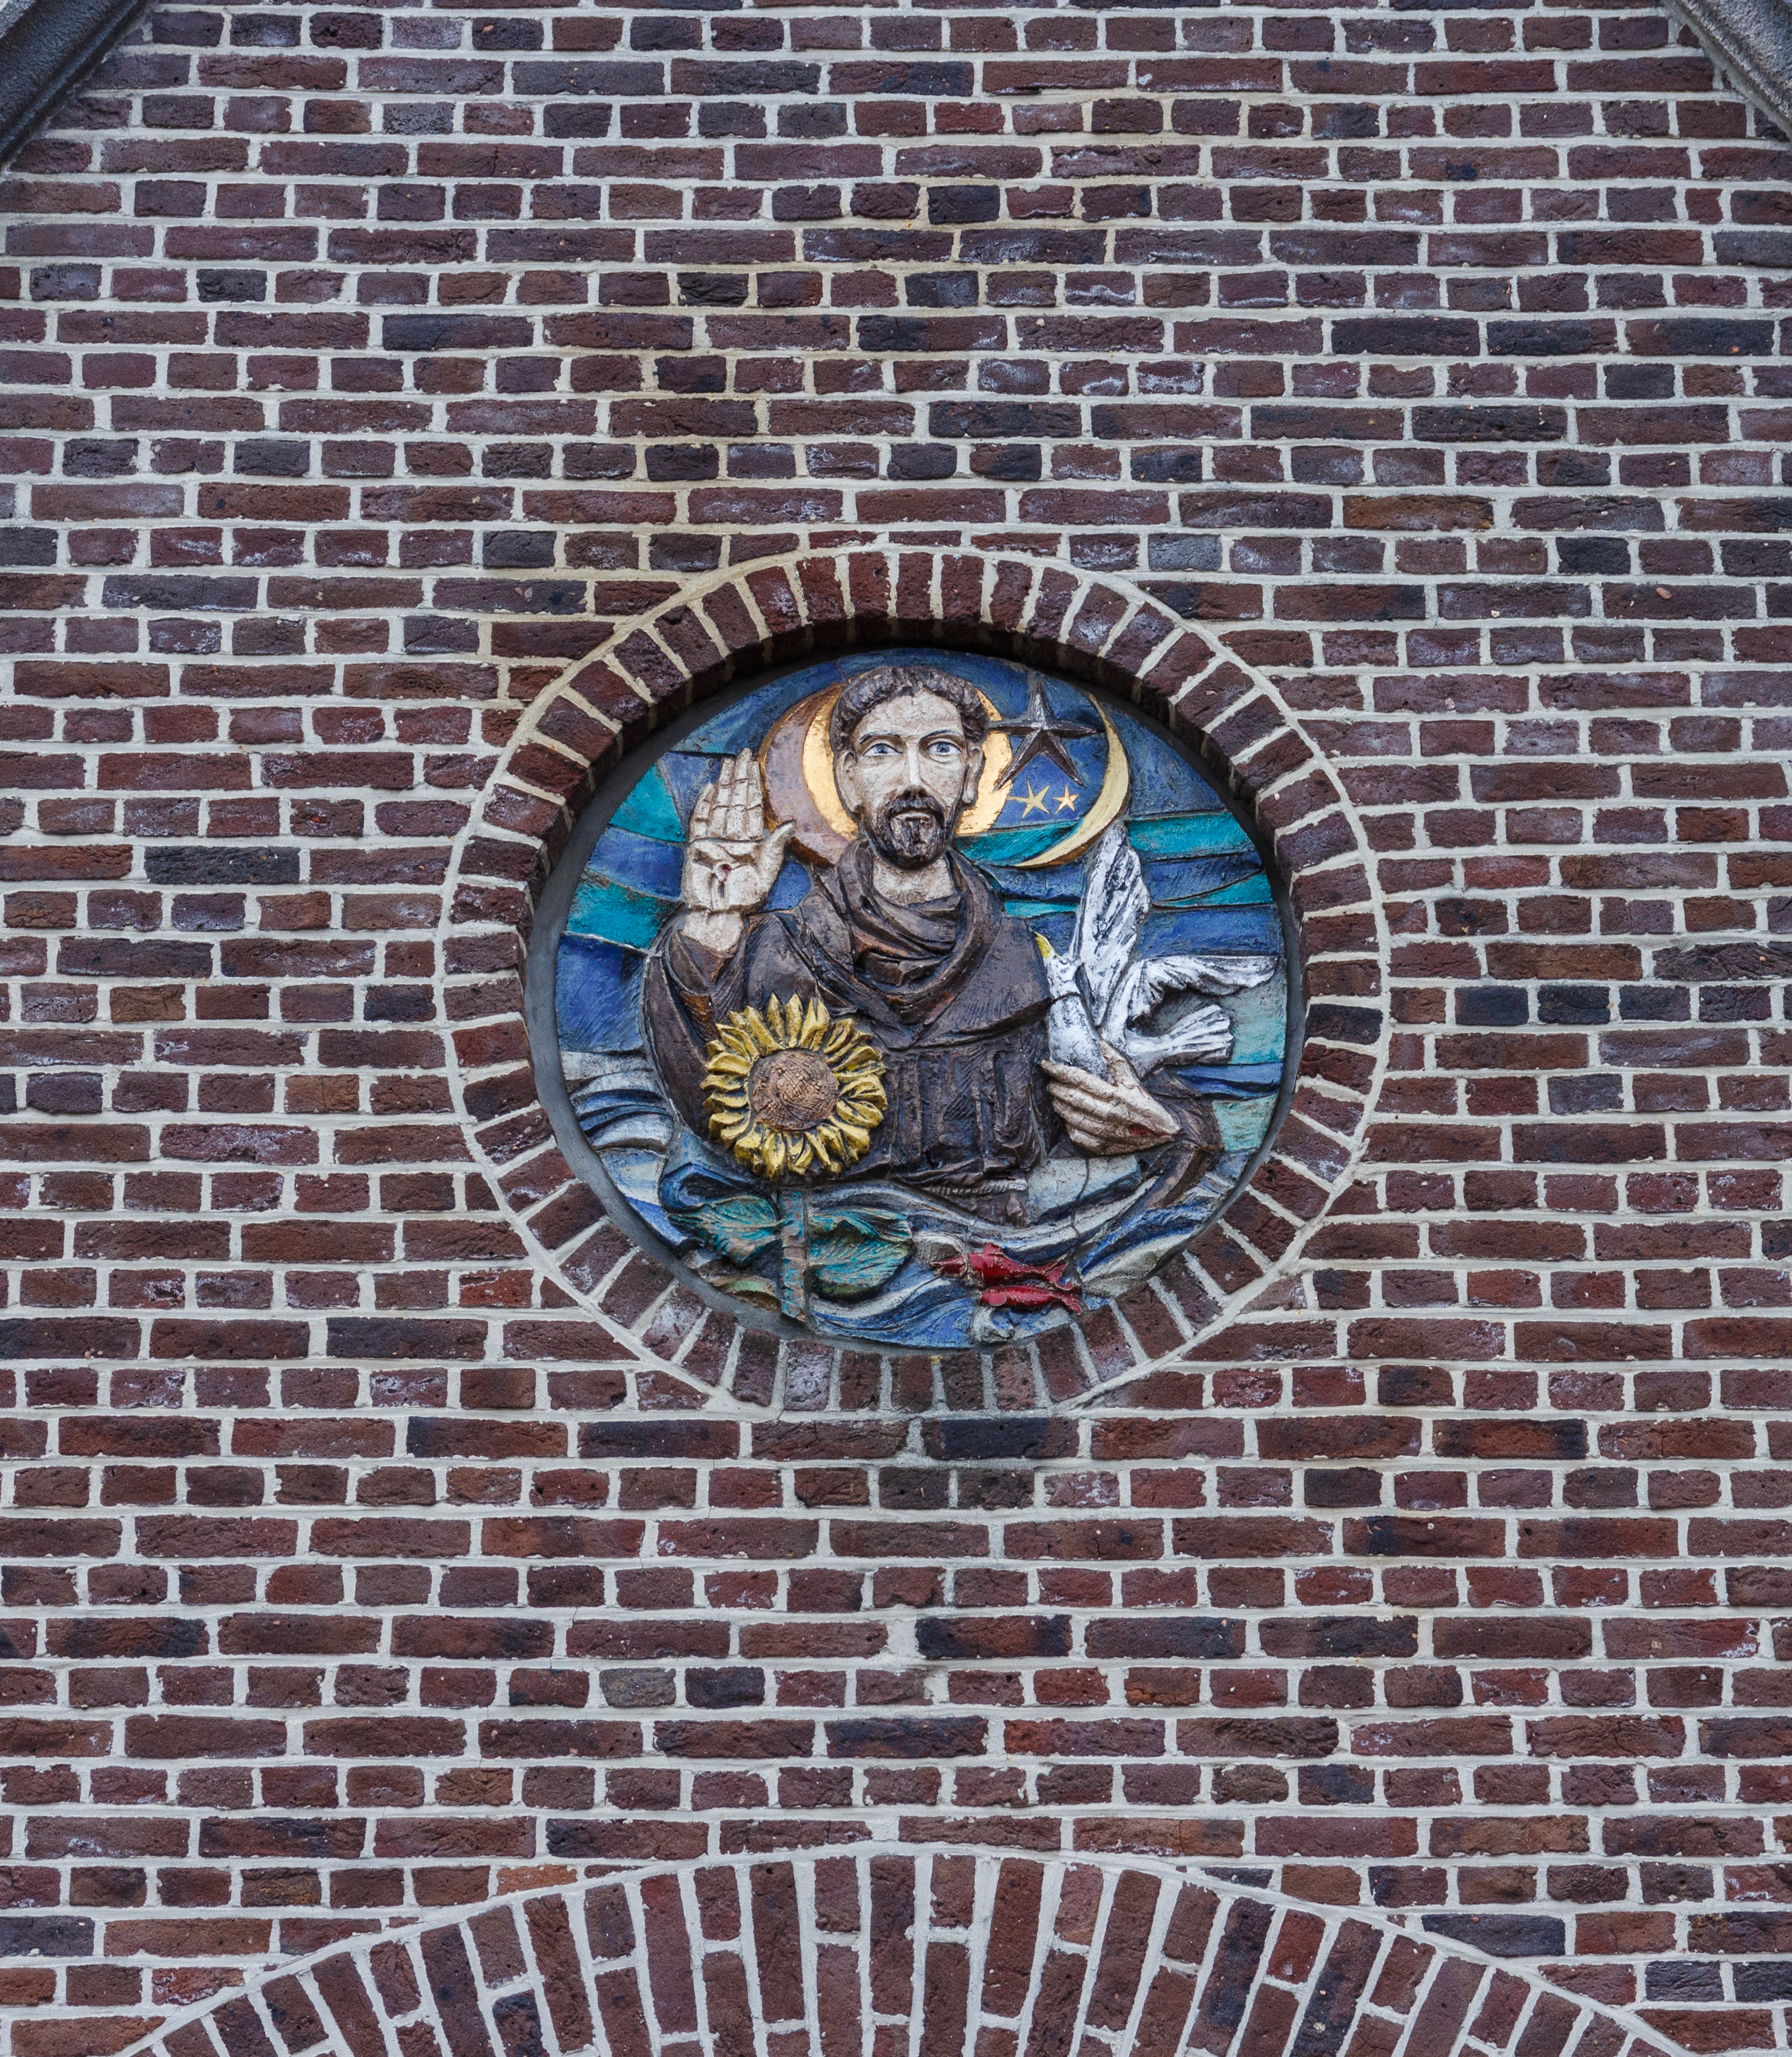 Afbeelding in muur van de Paterskerk in Rekem (deelgemeente) van Lanaken provincie Limburg in België 01